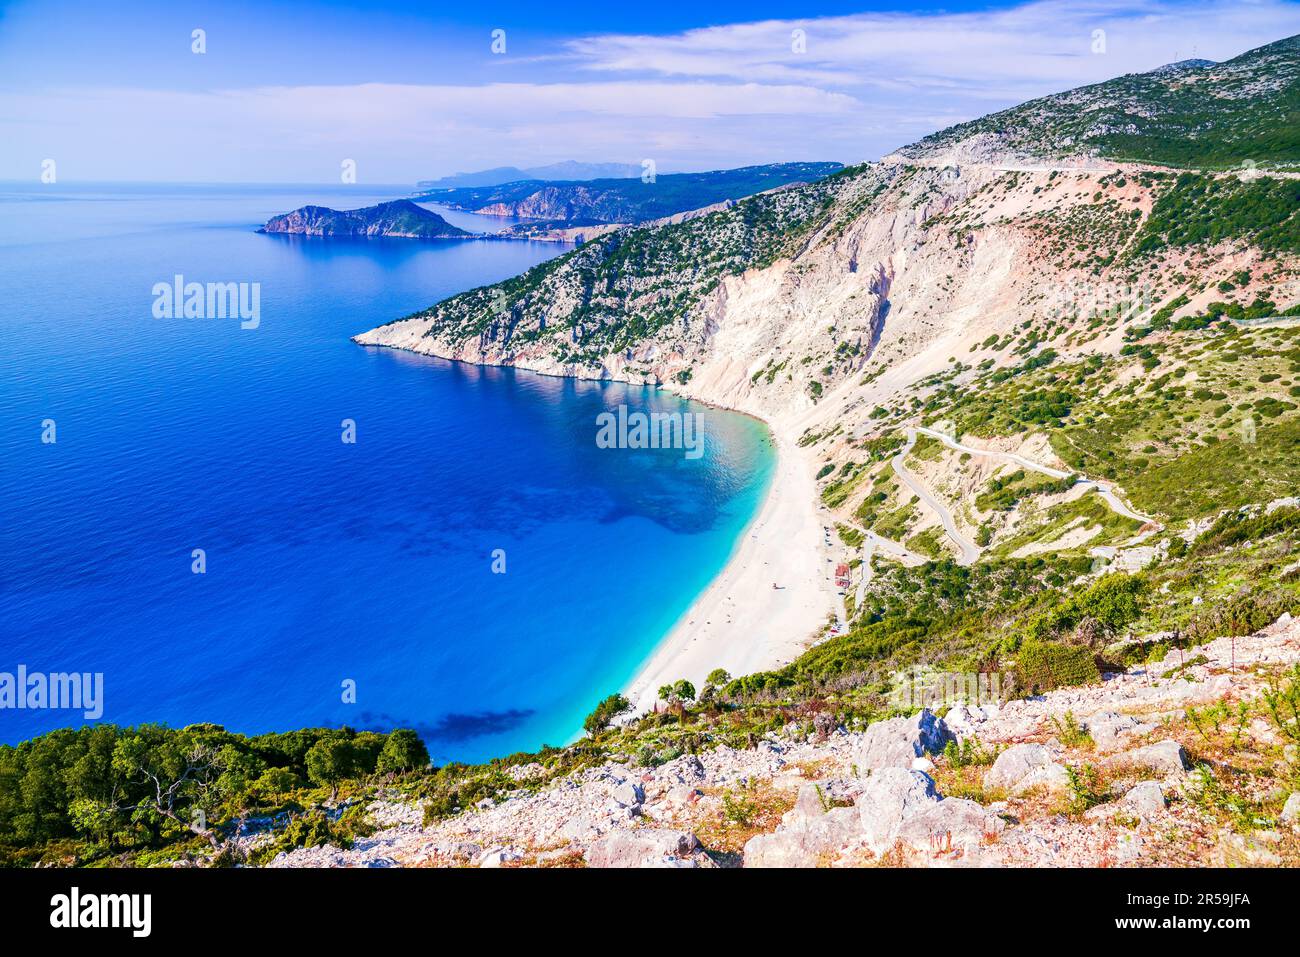 Kefalonia, Grèce. Plage de Myrtos - la plus belle plage de l'île et l'une des plus belles plages d'Europe, Iles Ioniennes - Céphalonie. Banque D'Images